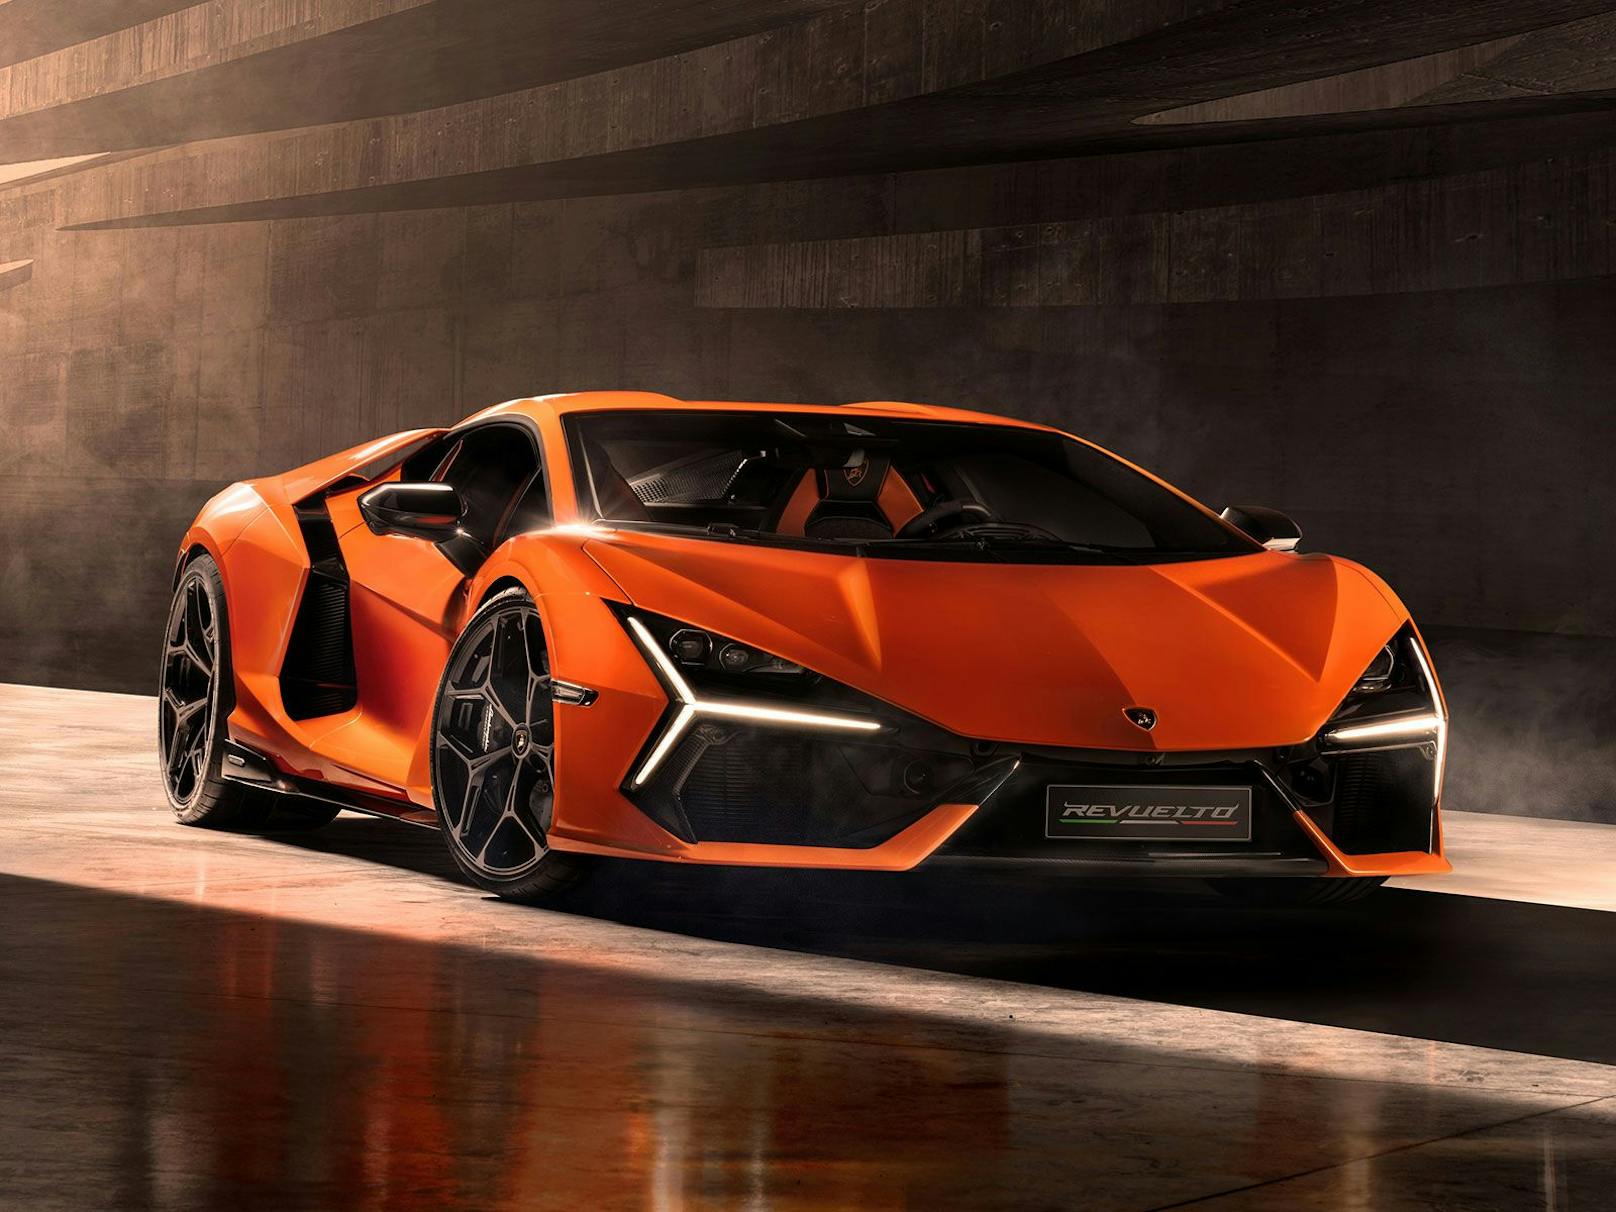 Neuer Look bei Lamborghini - der Revuelto verfügt über ein aggressiveres Design.